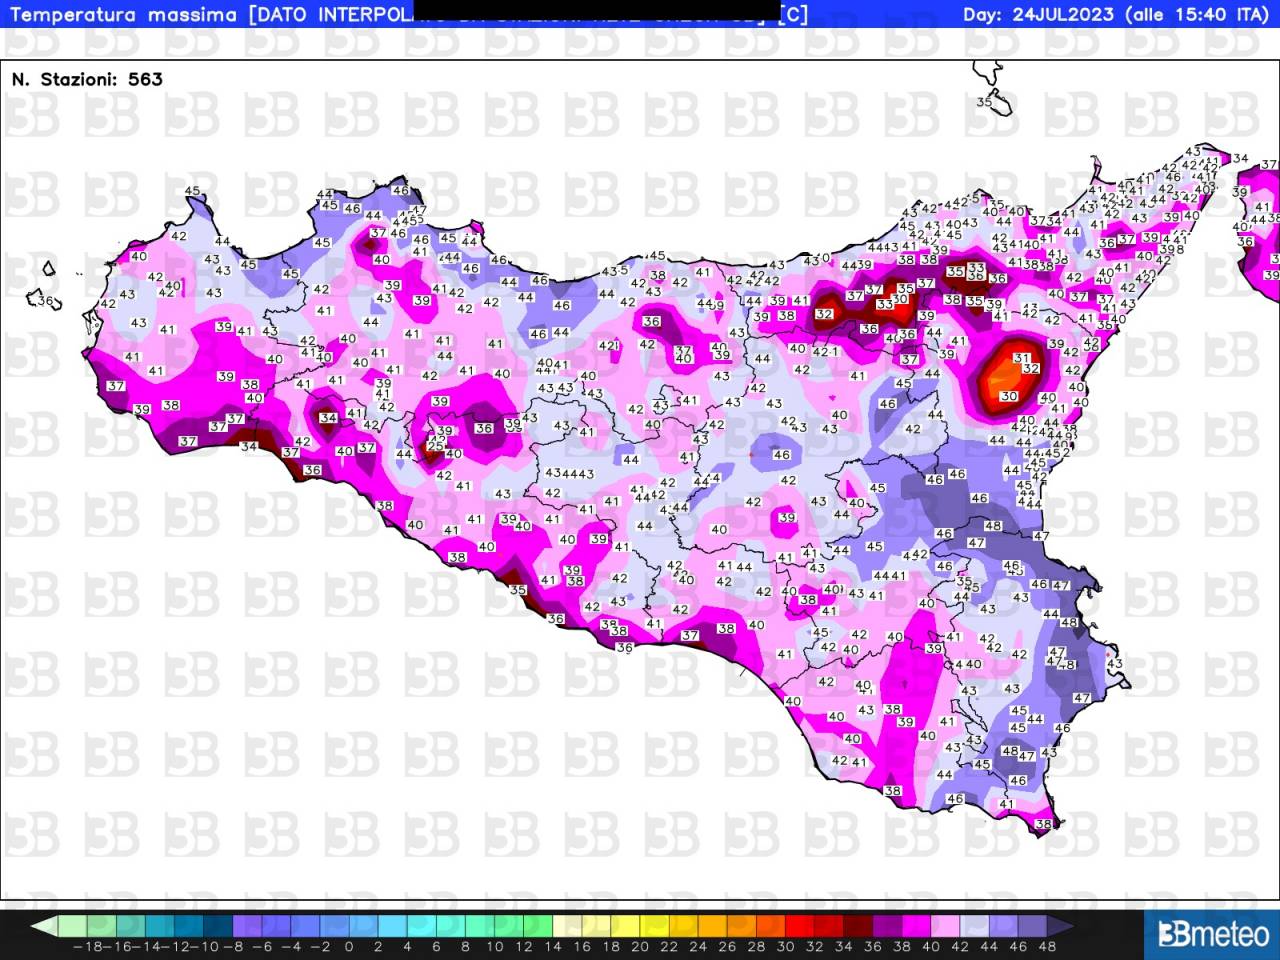 Le temperature massime registrate in Sicilia nel pomeriggio del 24 luglio 2023: picchi record di 45-47°C in provincia di Palermo, fino a 48°C tra la Piana di Catania e il Siracusano interno